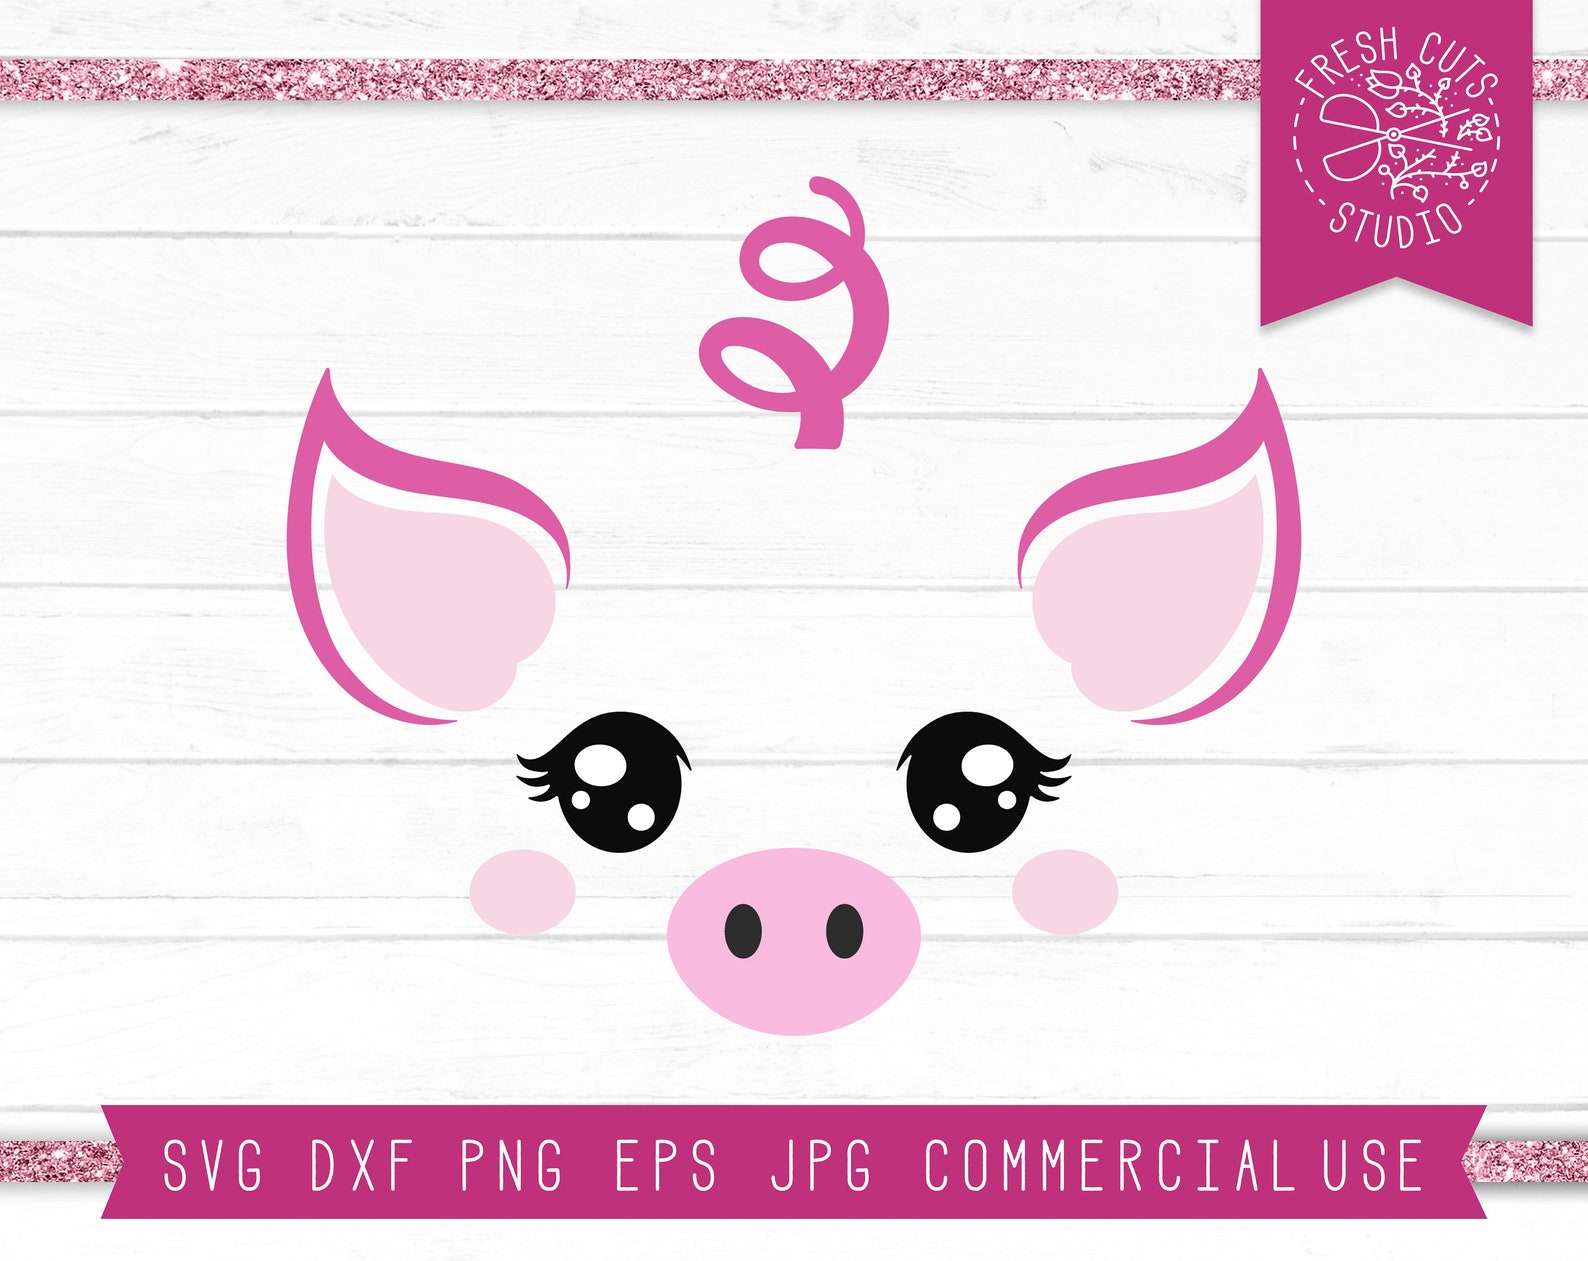 Pig Faces SVG Cut File for Cricut.